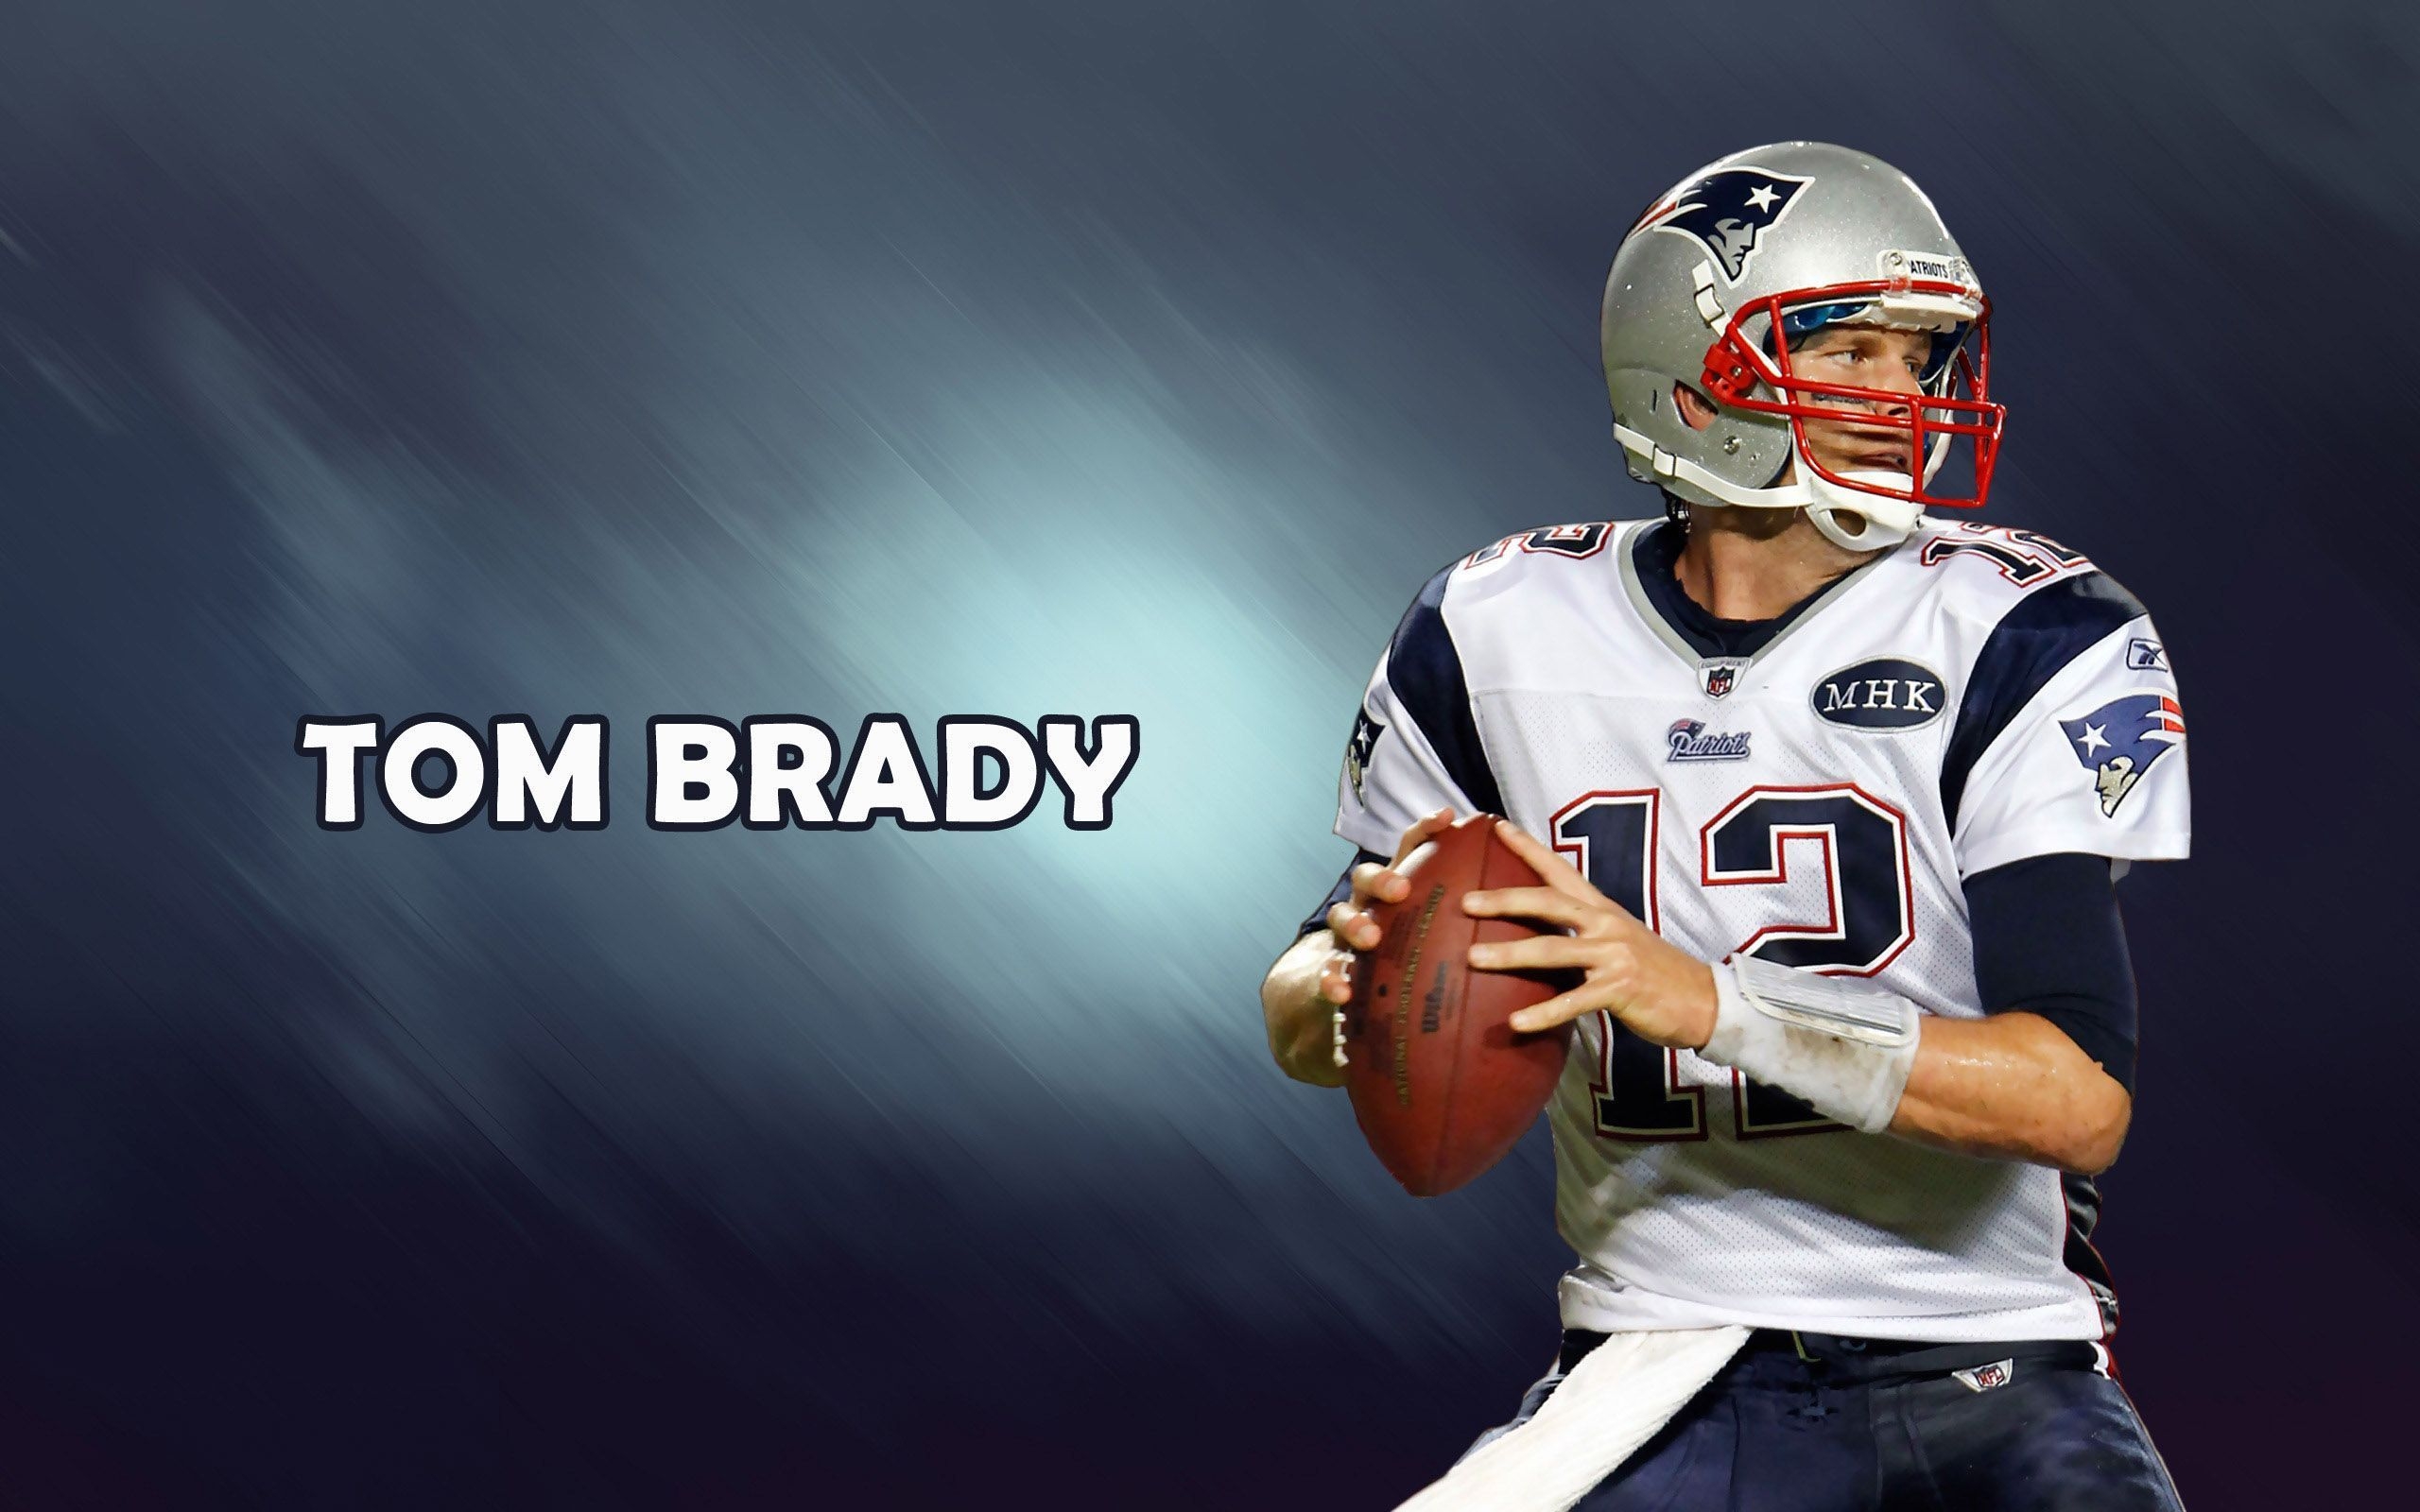 Tom Brady New England Patriots for 2560 x 1600 widescreen resolution